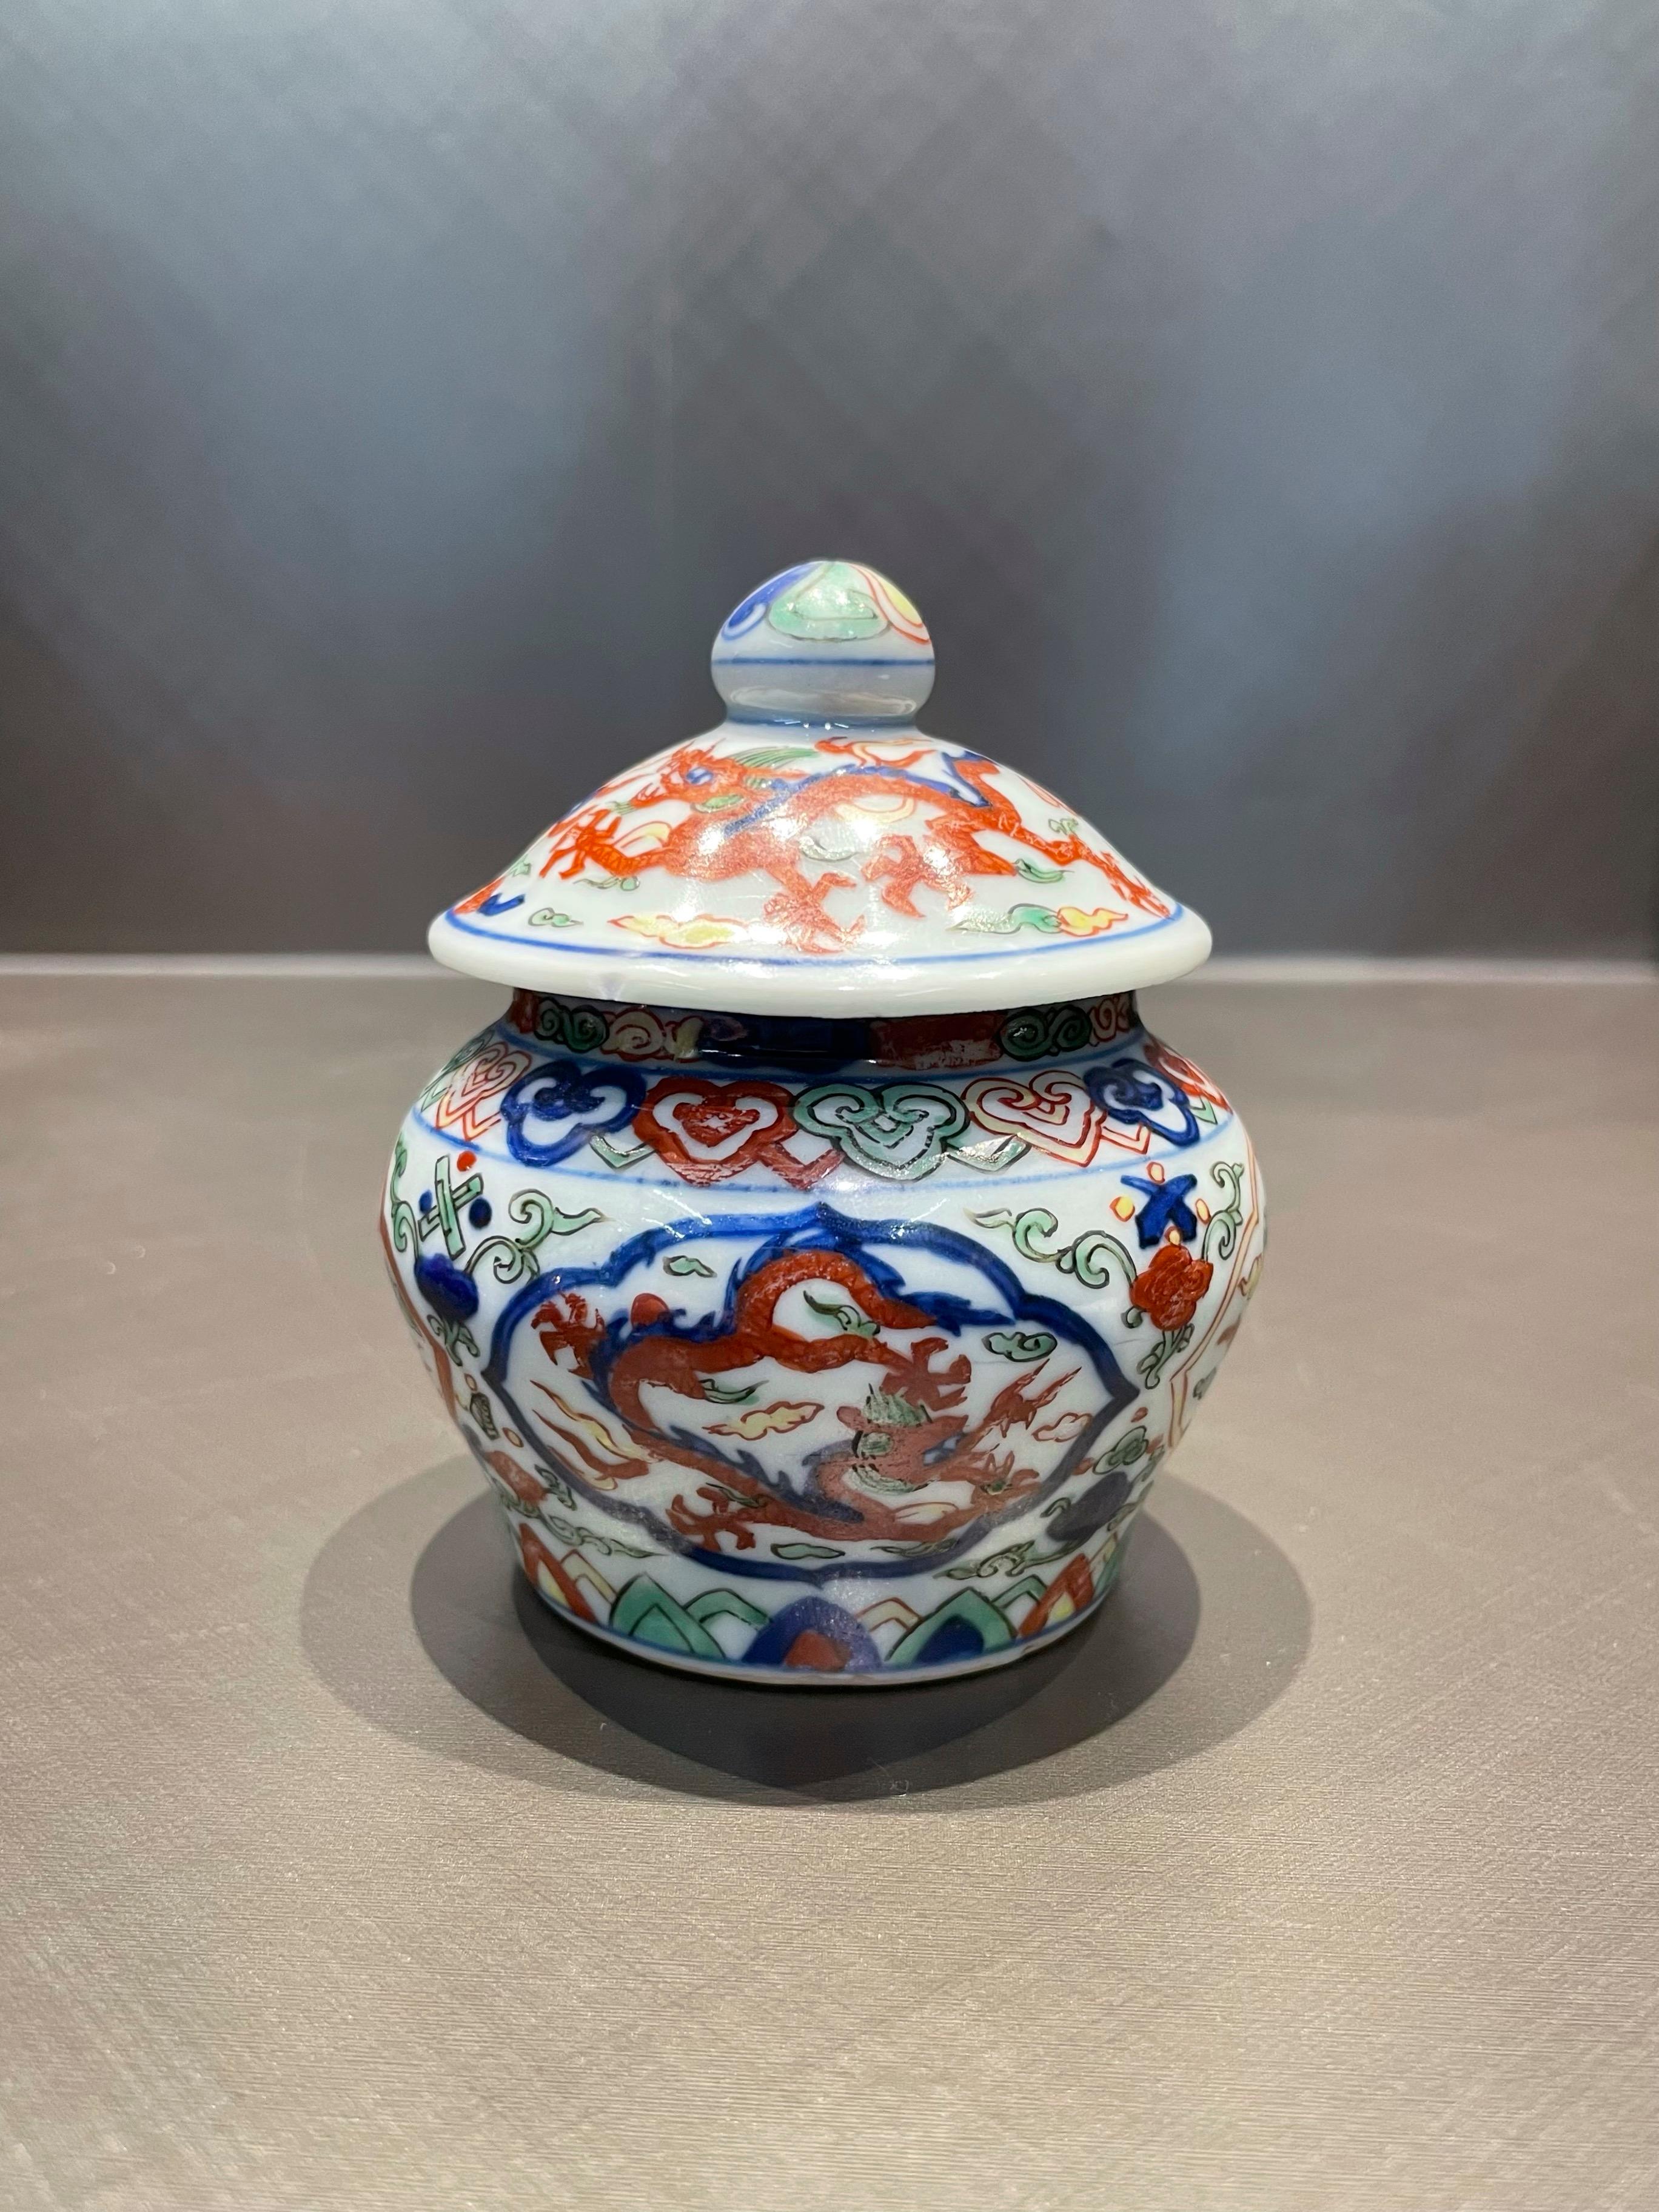 Petite jarre avec couvercle réalisée dans la peinture à la main en cinq couleurs couramment utilisée dans la période Wanli de la dynastie Ming.

On suppose qu'il a été utilisé pour conserver les feuilles de thé.

La peinture utilise la technique